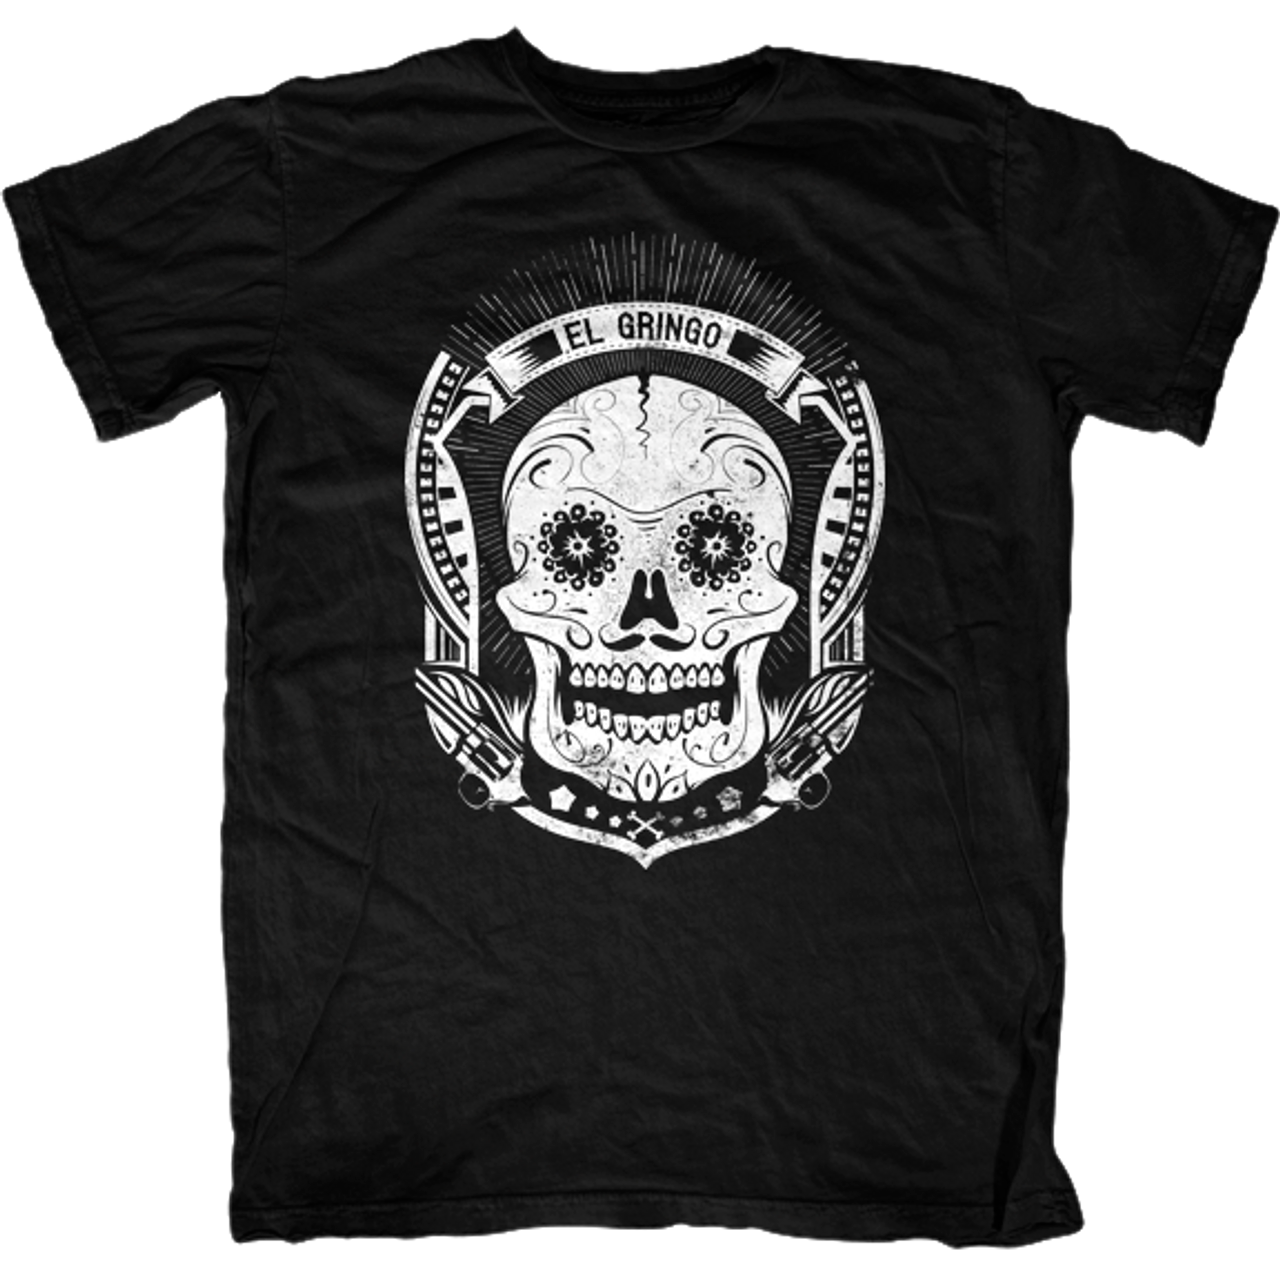 El Gringo T-Shirt - First Amendment Tees Co. Inc.